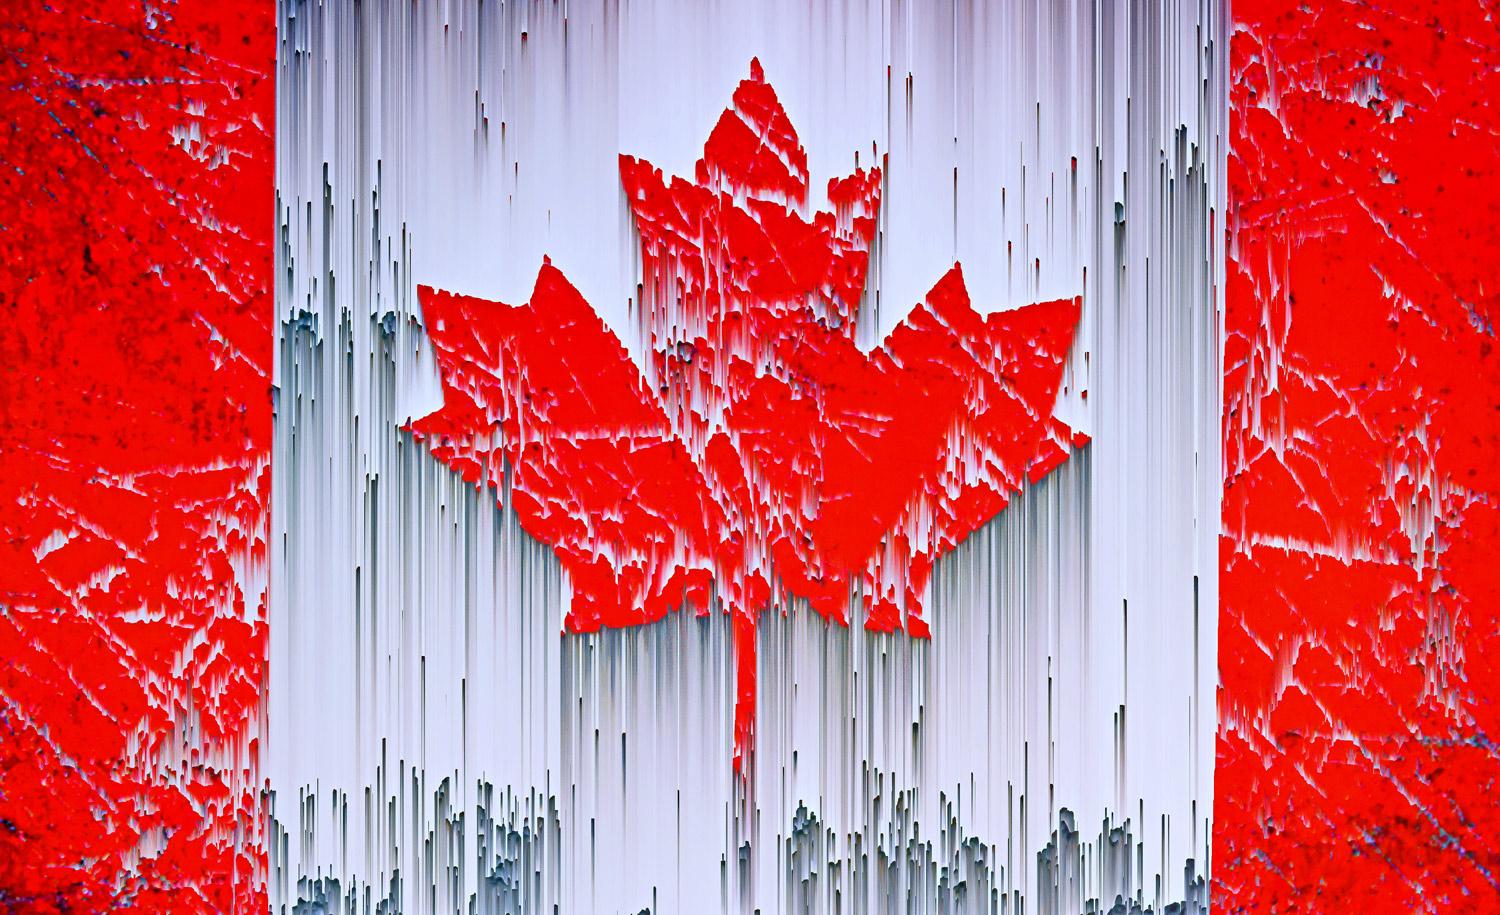 Zeitgenössische Kanada V-Fotografie in limitierter Auflage von Jochen Cerny